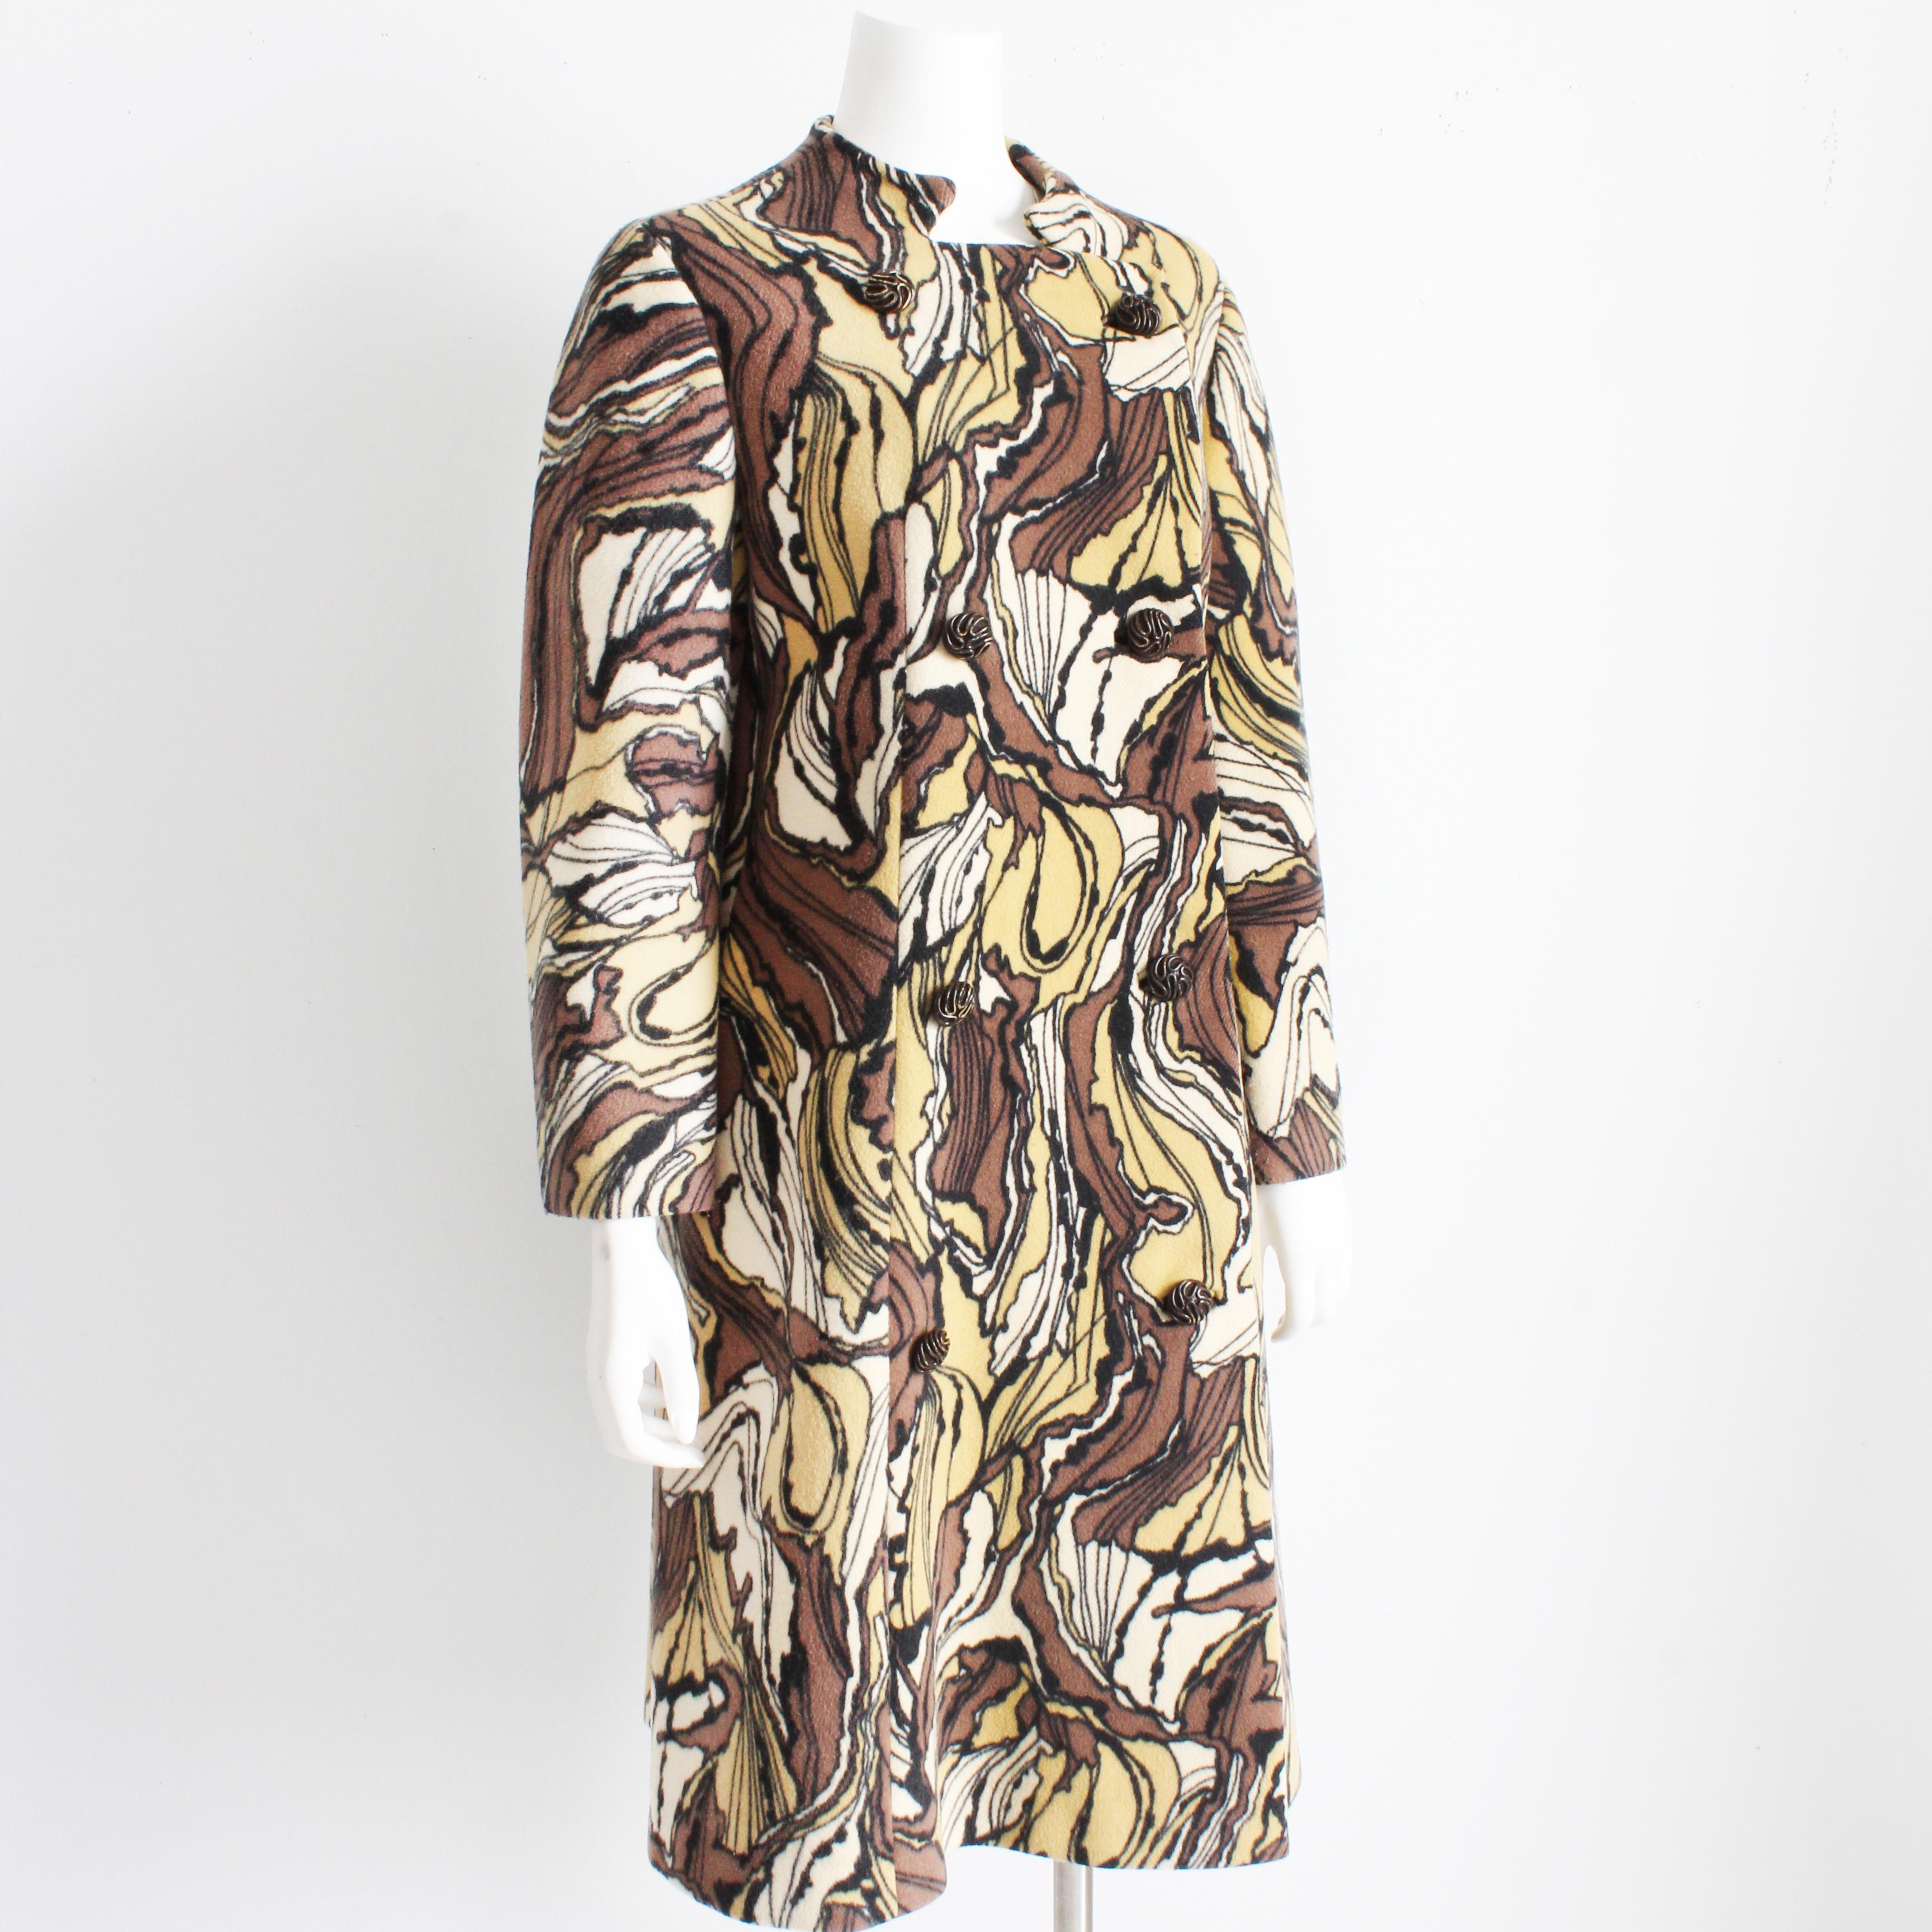 Voici un manteau de Ronald Amey, difficile à trouver et incroyablement magnifique, réalisé pour son label Burke-Amey et vendu par Saks Fifth Avenue, très probablement dans les années 1960. Confectionnée dans une fabuleuse laine imprimée abstraite du